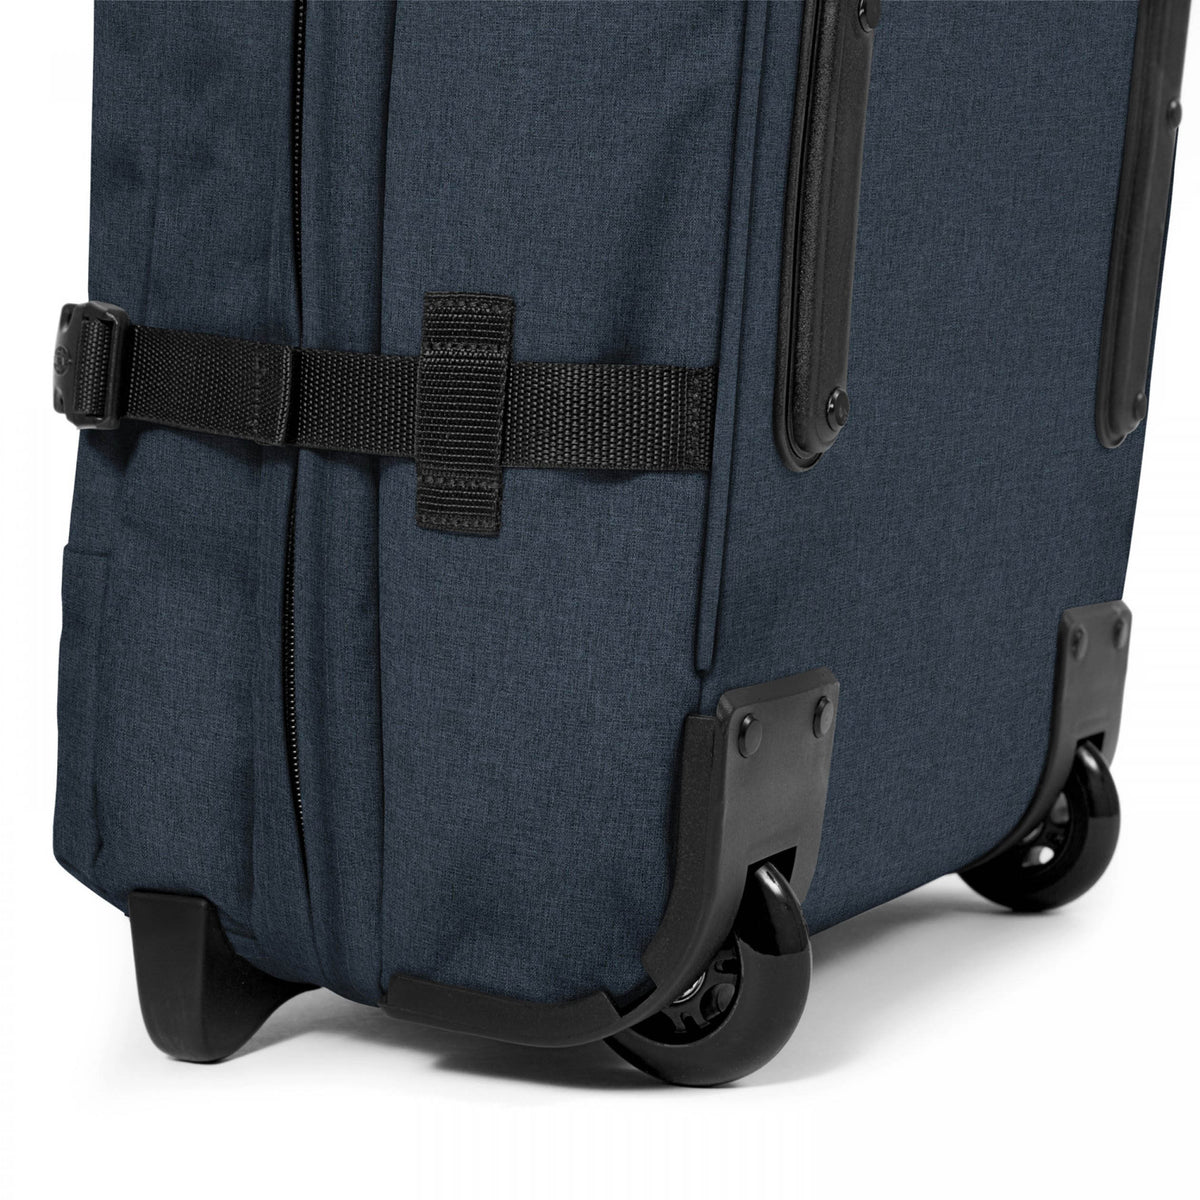 Eastpak Tranverz M Suitcase - Triple Denim